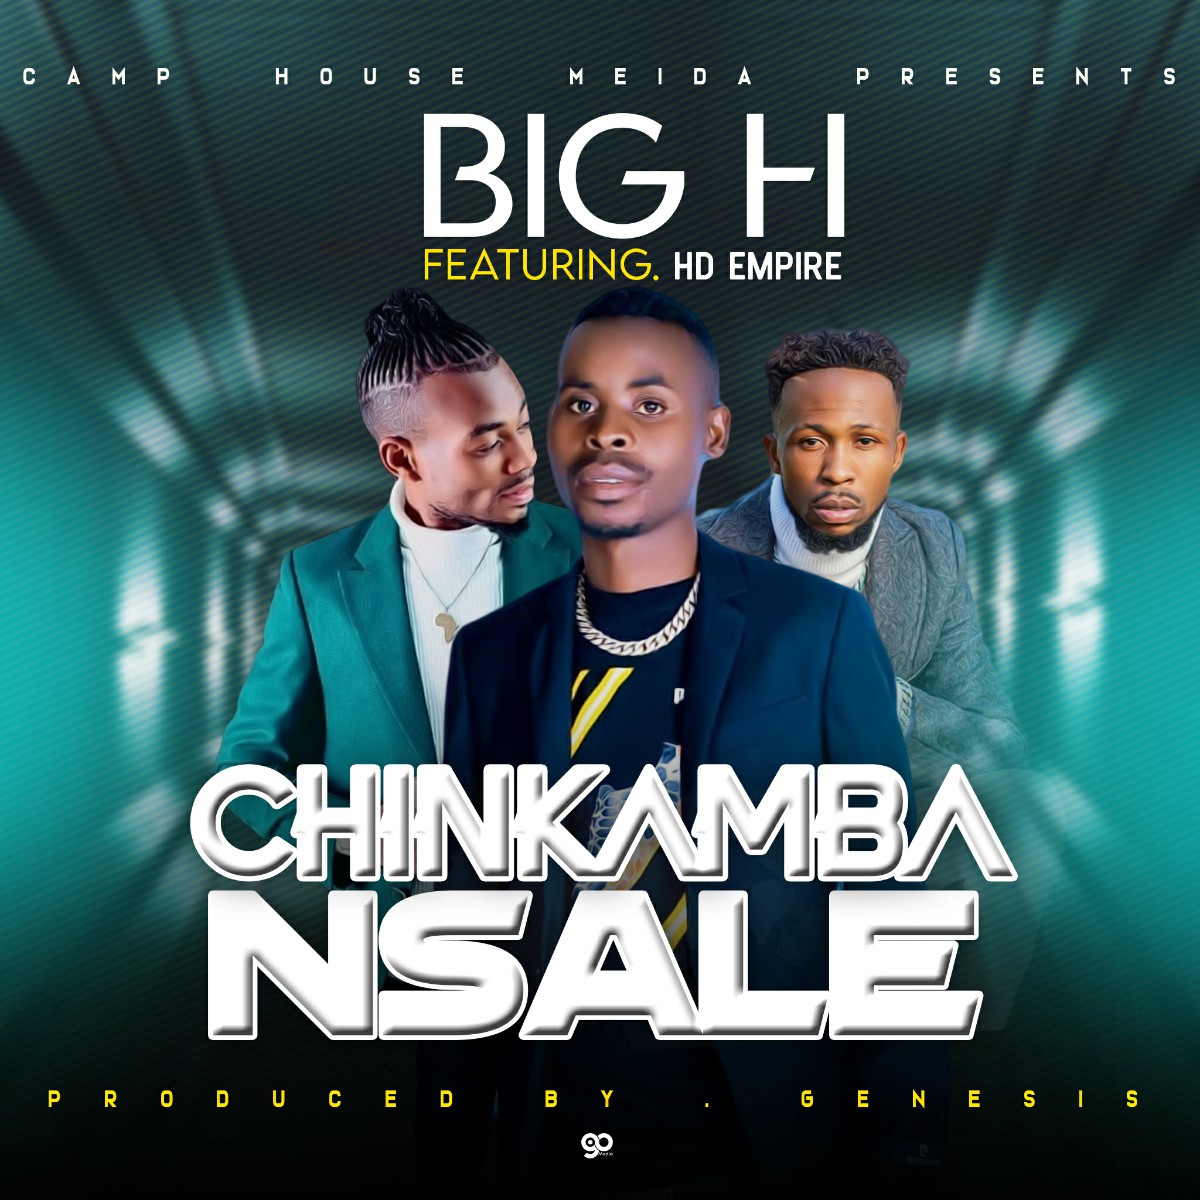 Big H ft. HD Empire - Chinkamba Nsale